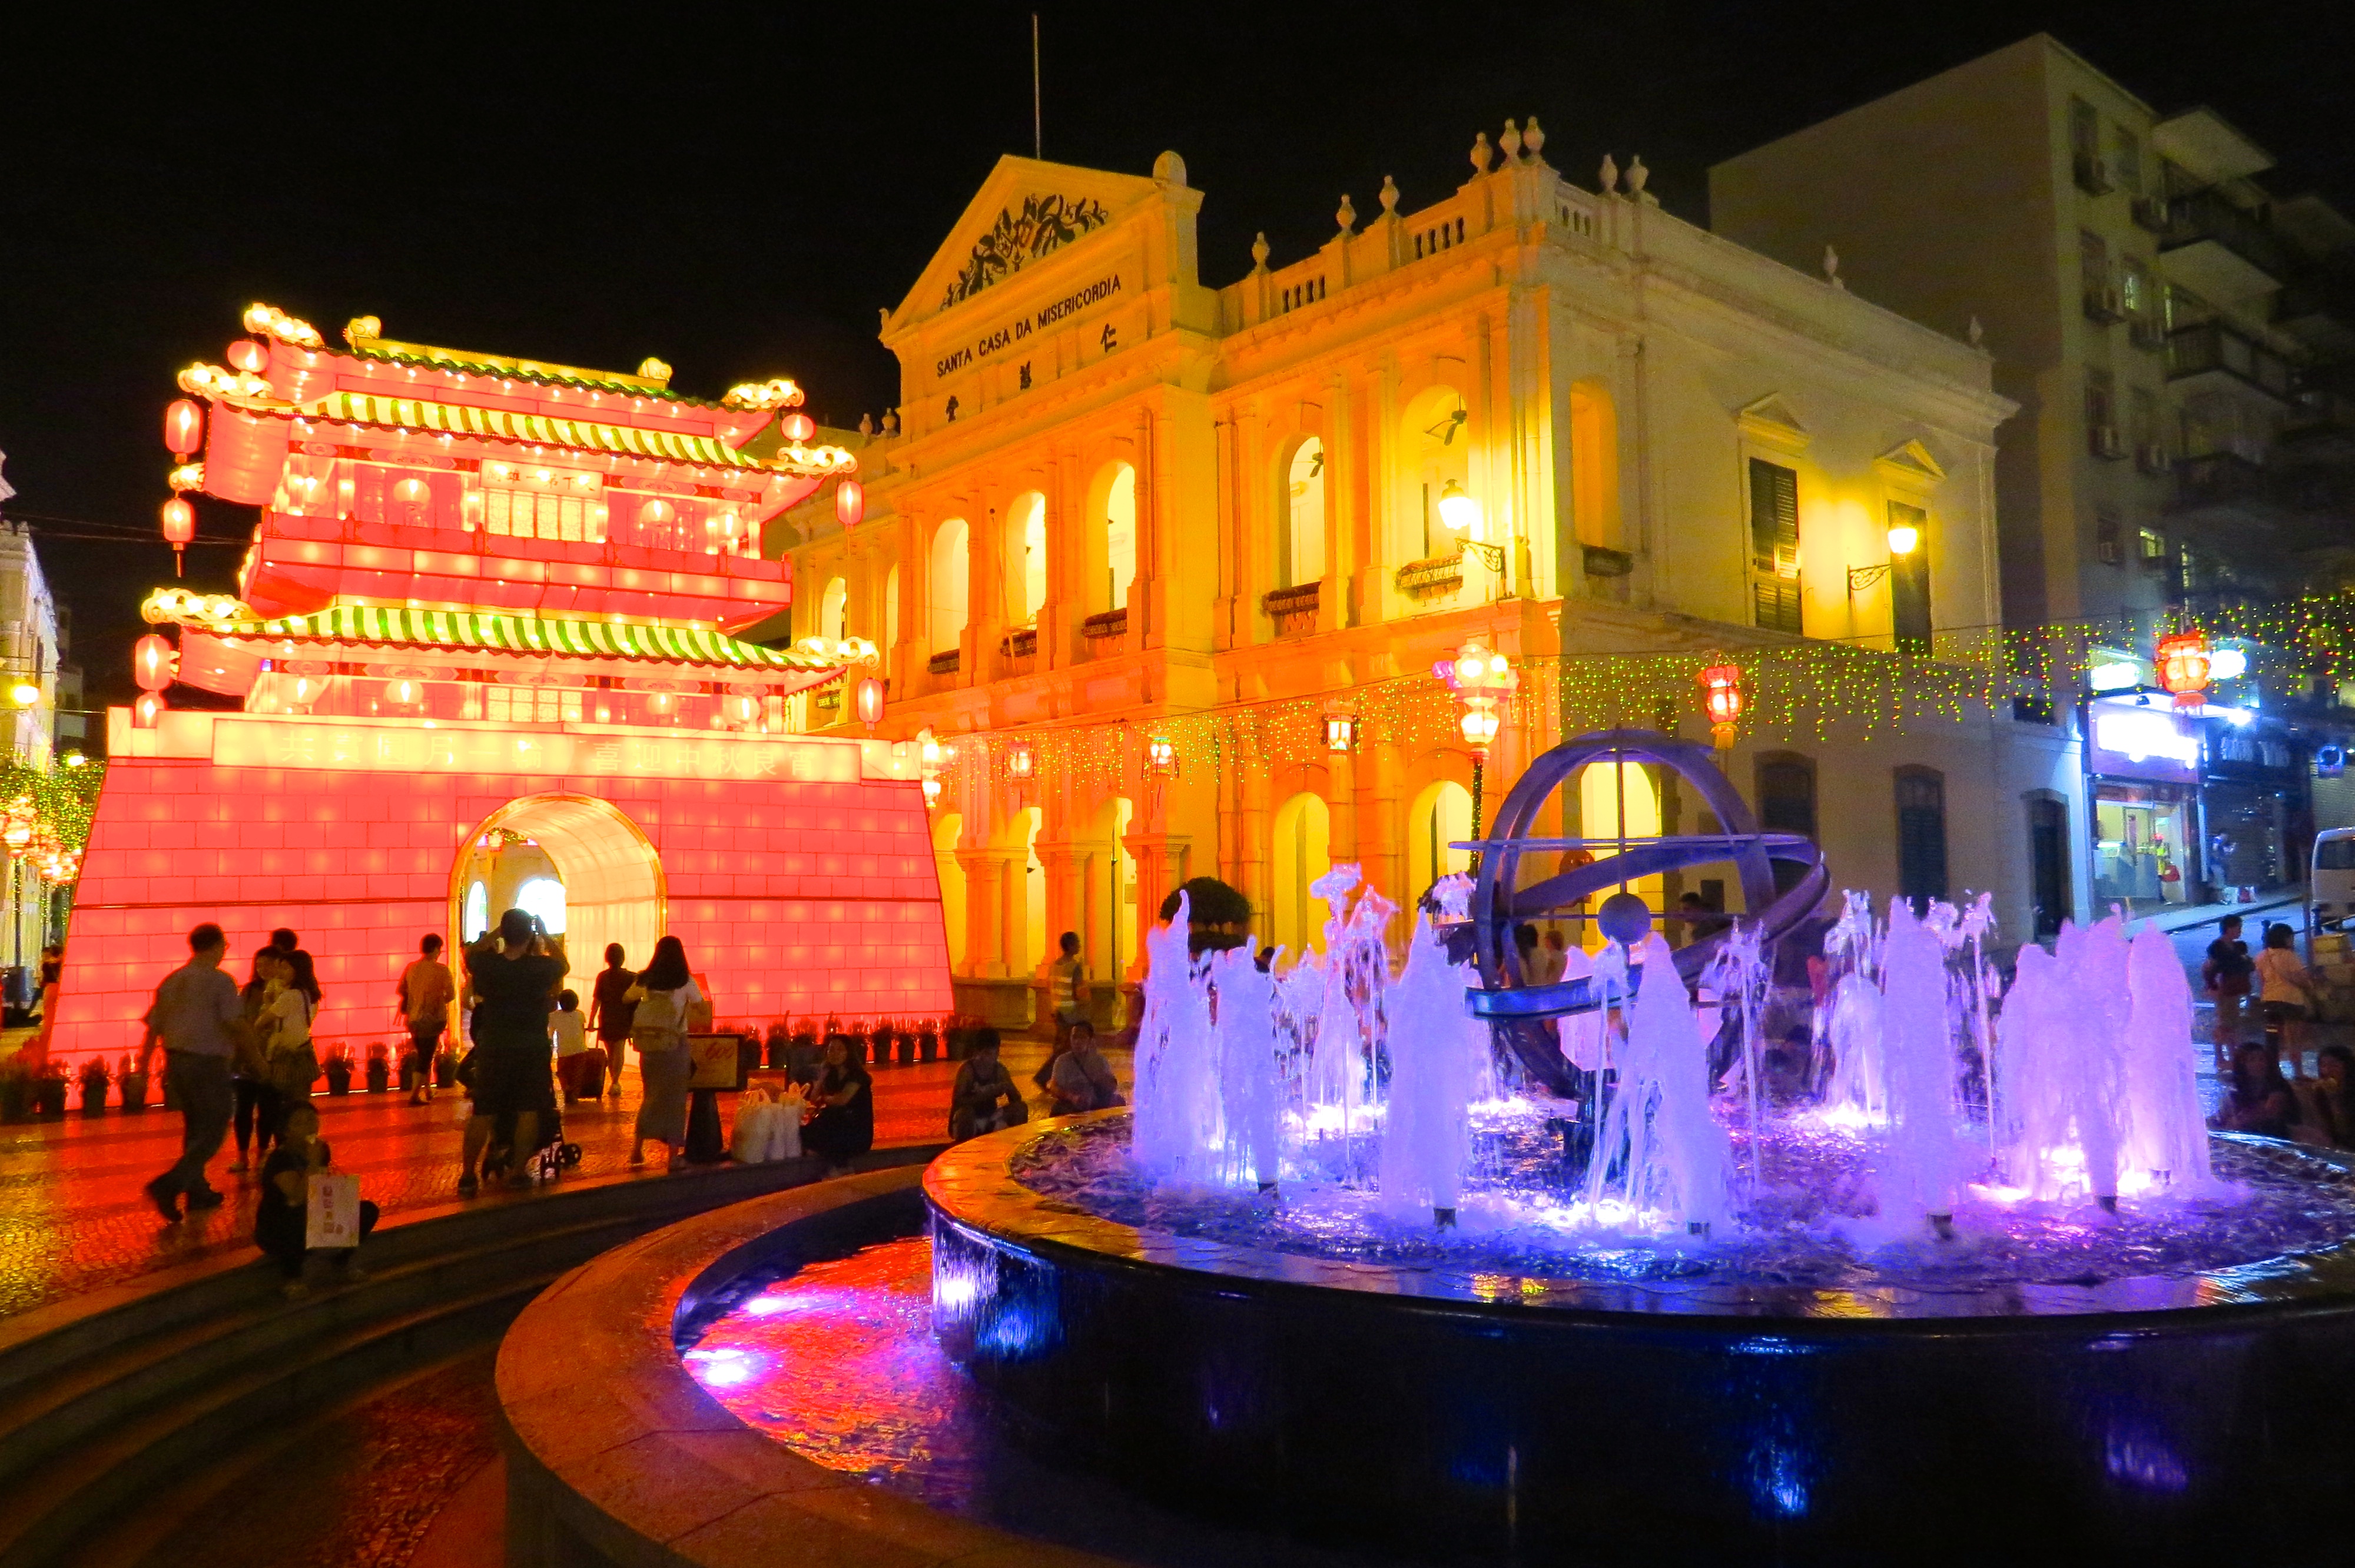 Casinos and Casinos in Macau